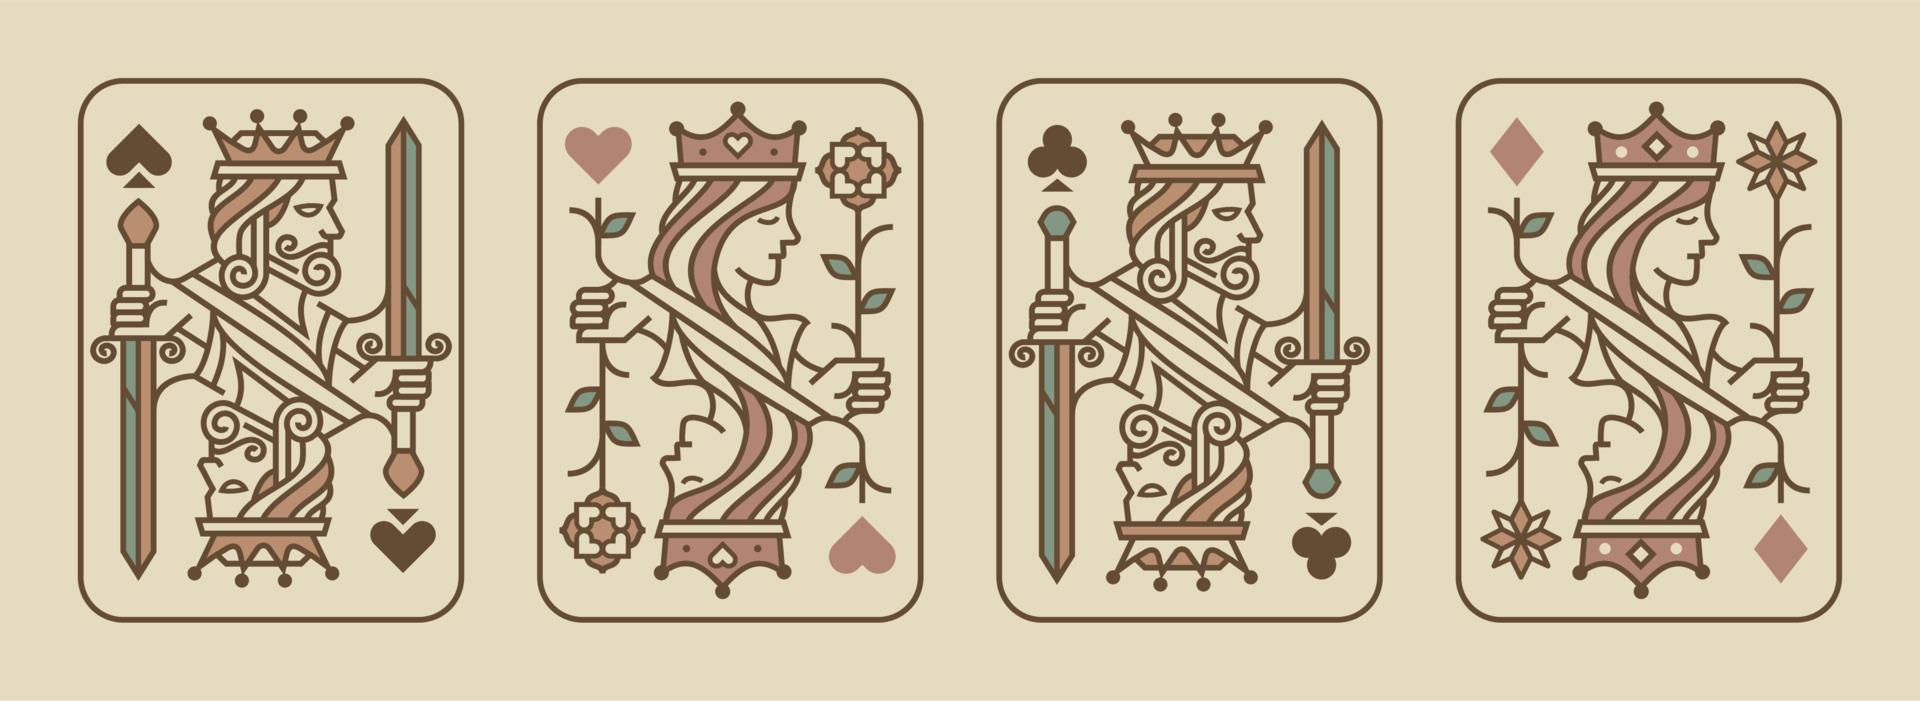 impostato di re e Regina giocando carta vettore illustrazione impostato di cuori, vanga, diamante e club, reale carte design collezione